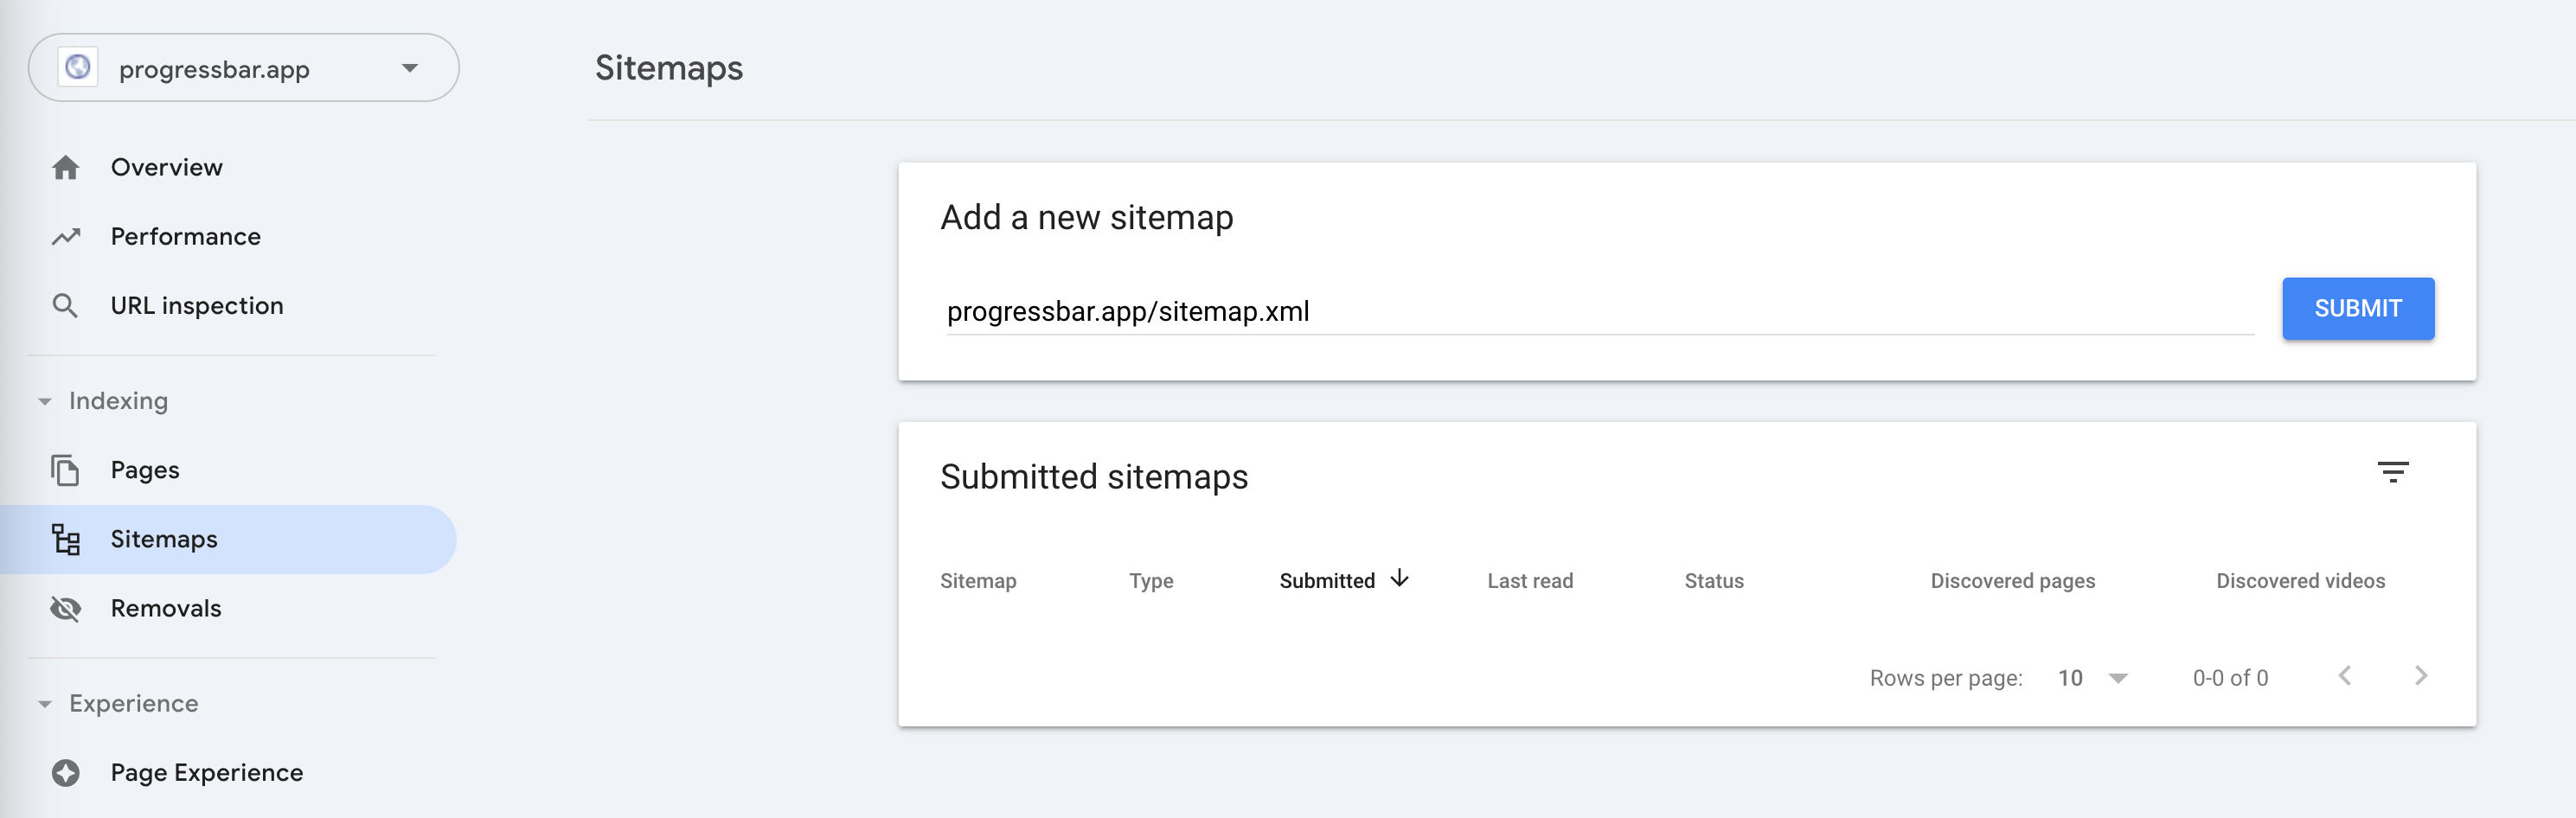 Submit sitemap url